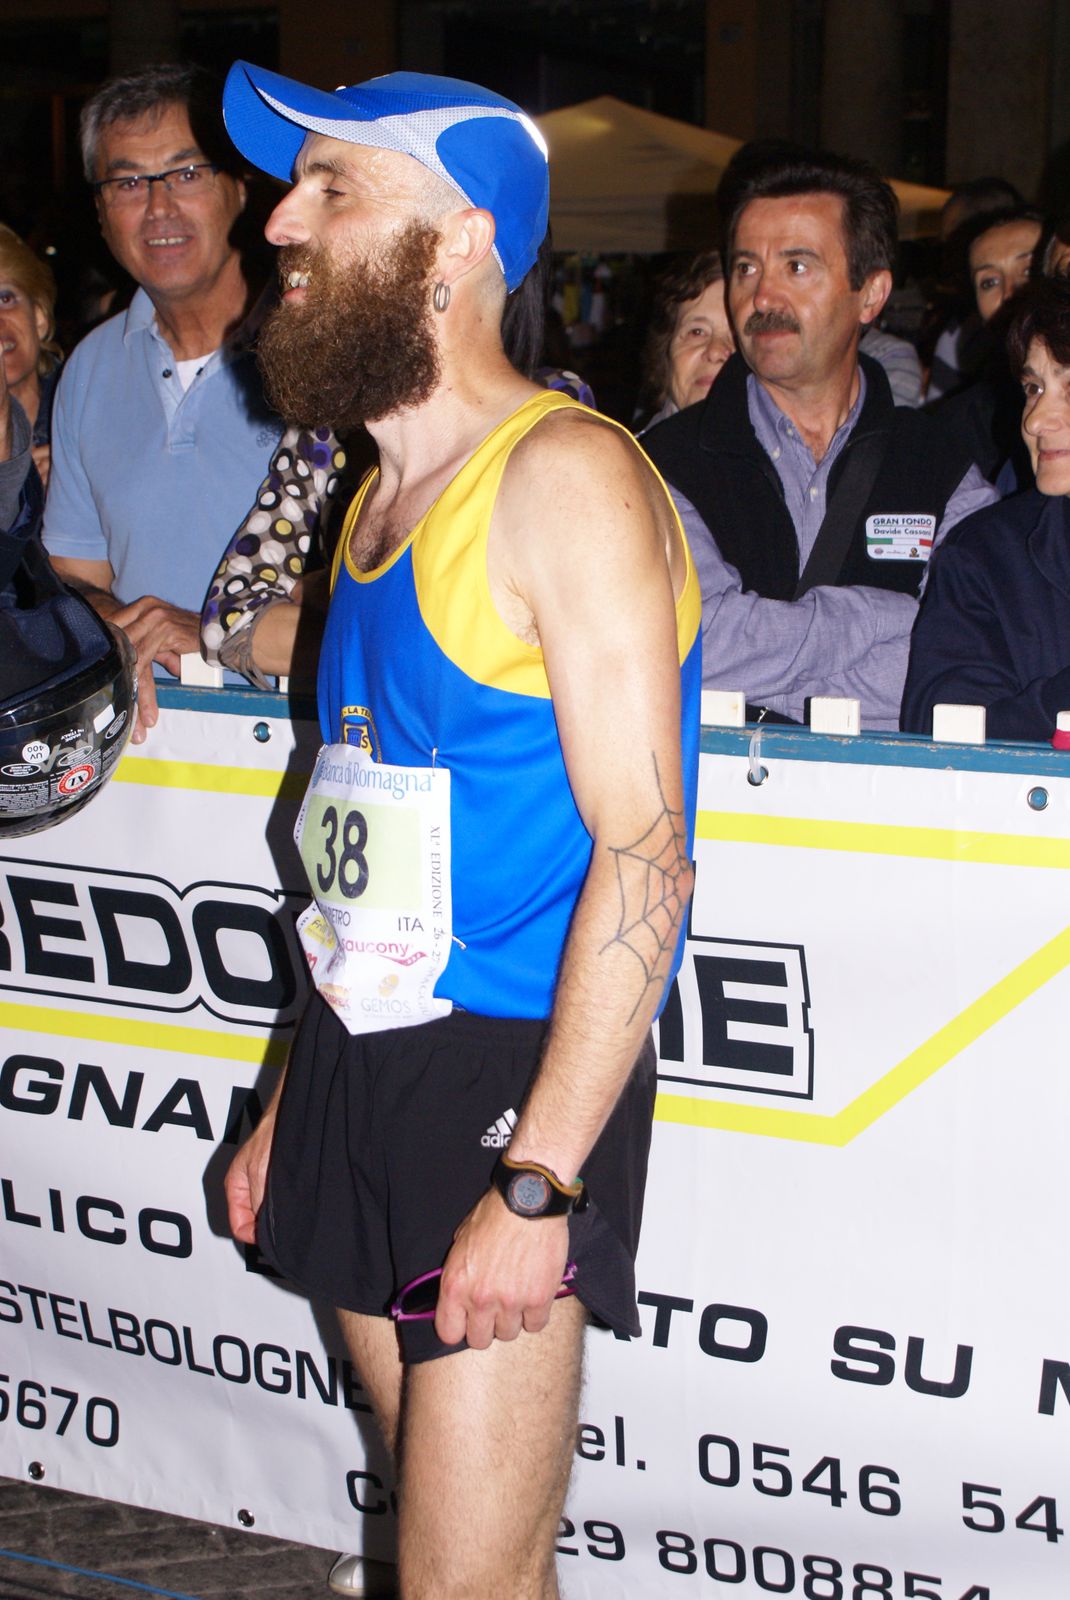 100 km del Passatore (40^ ed.). Il brianzolo Pietro Colnaghi, secondo  classificato e primo degli esordienti, ha mostrato stoffa e tempra -  Ultramaratone, maratone e dintorni